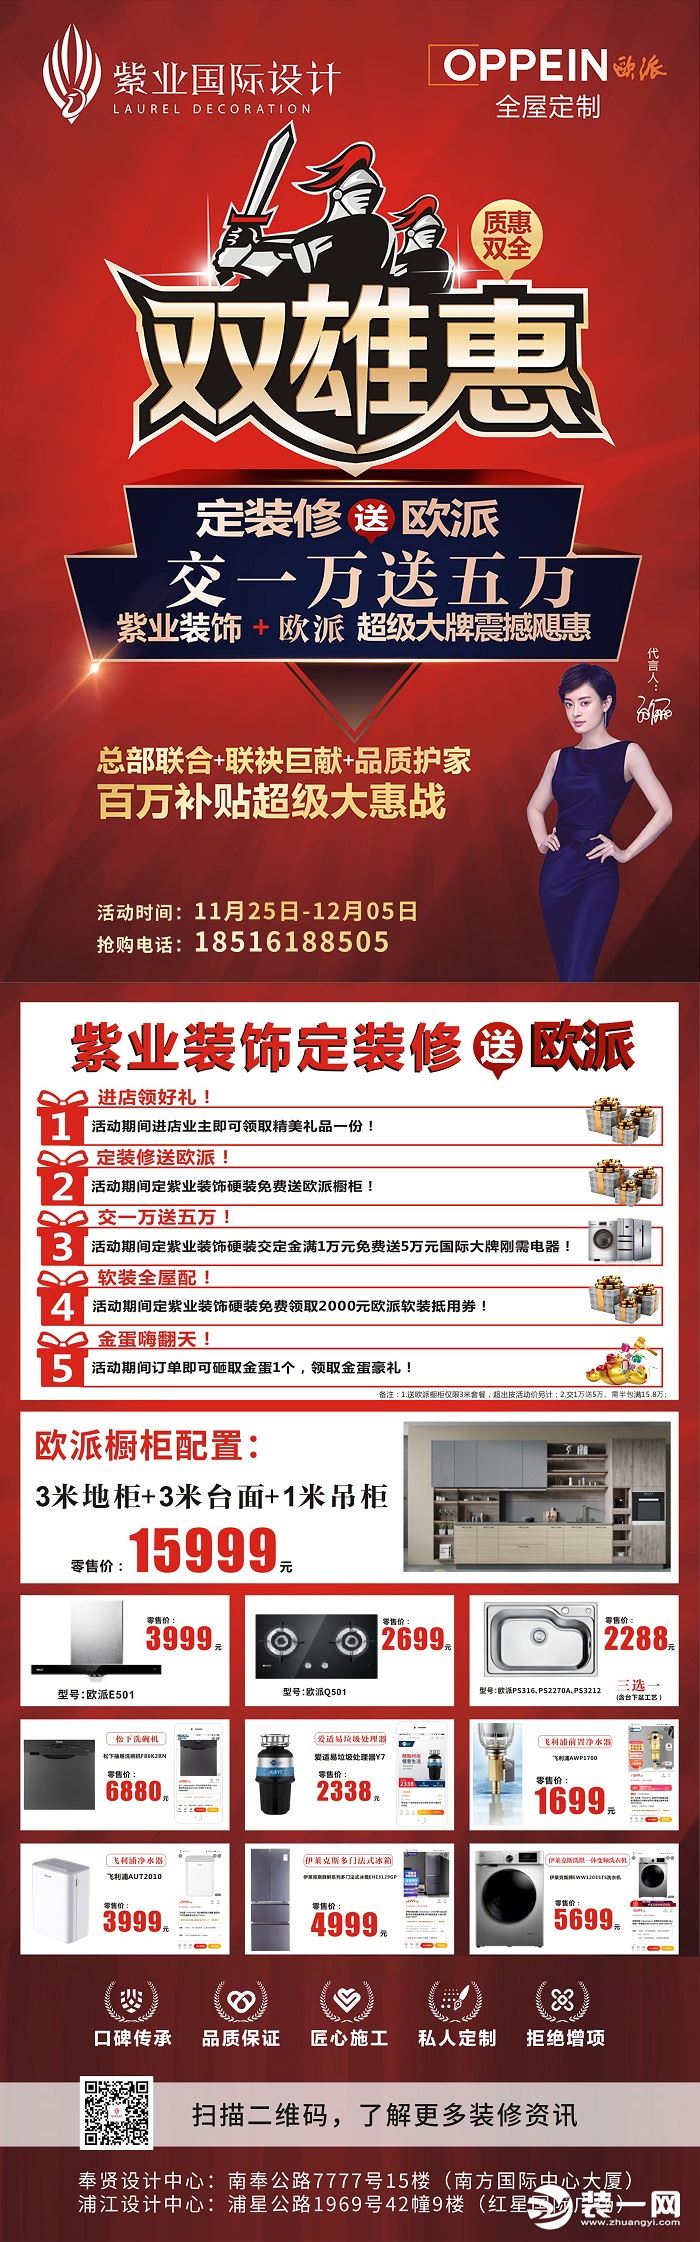 上海紫业国际设计公司活动图